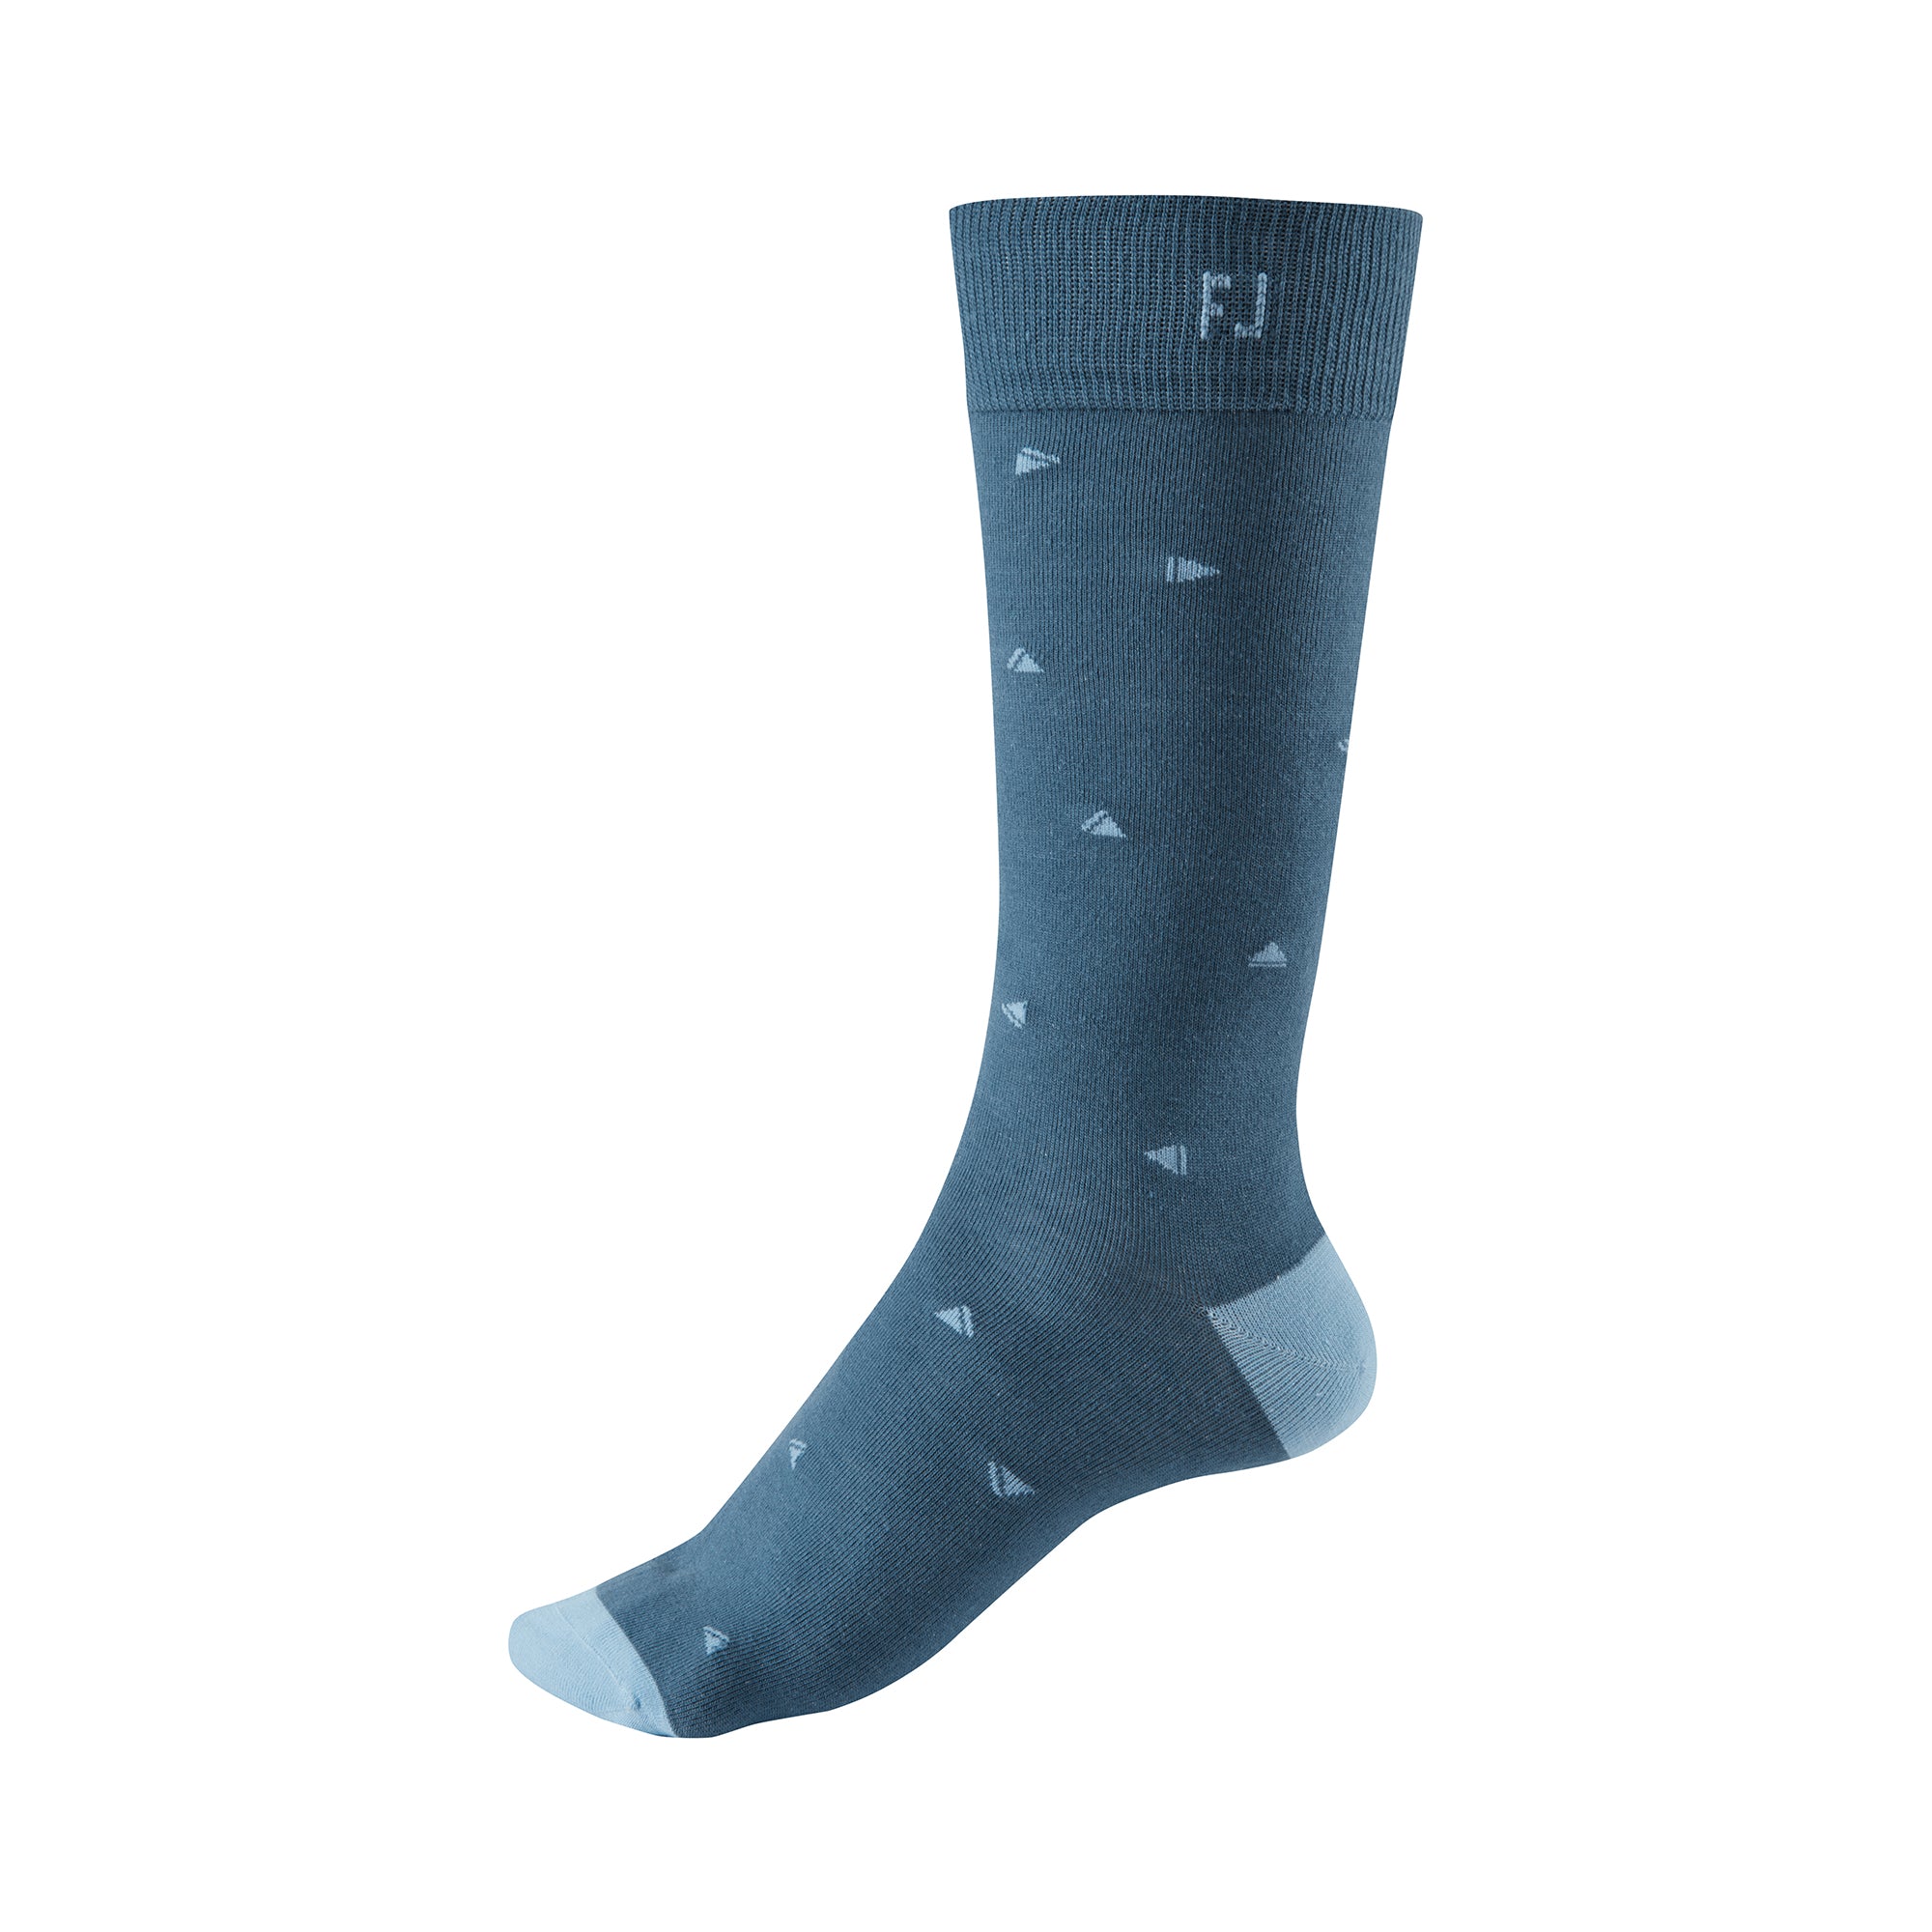 footjoy-prodry-lightweight-fashion-crew-golf-socks-16167-ink-blue